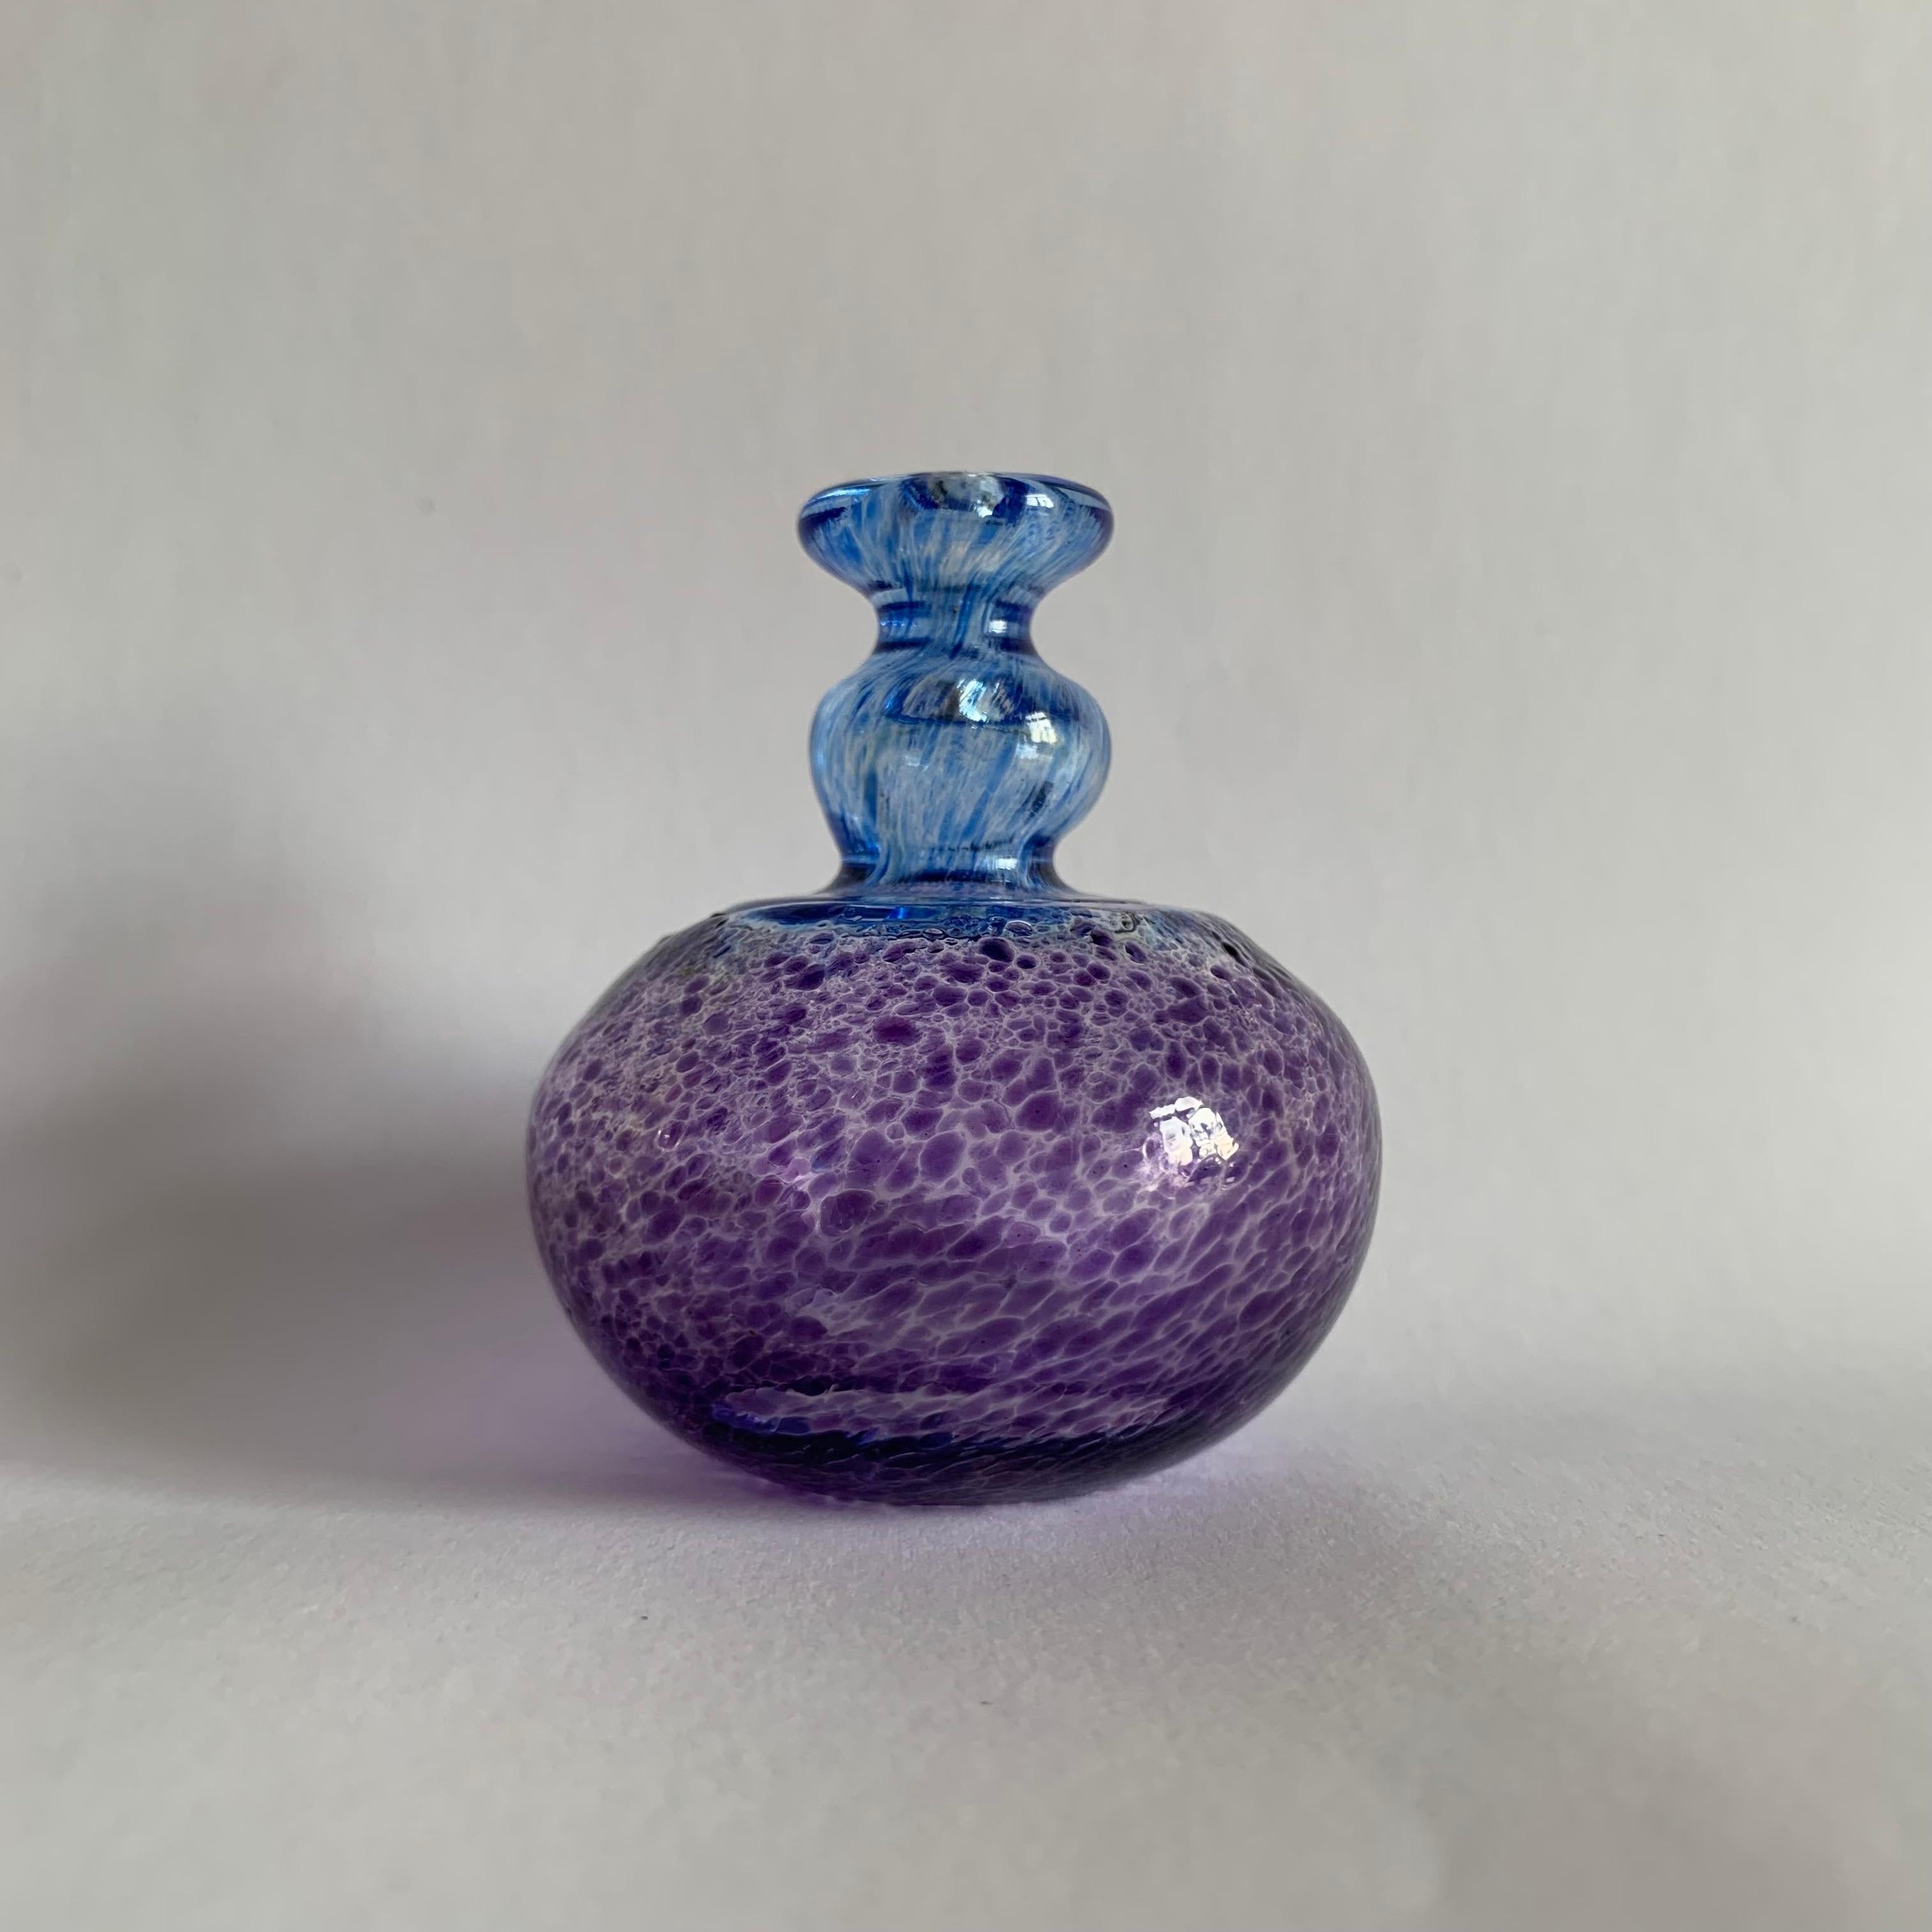 Bertil Vallien for Kosta Boda Miniature vase, 1990s.